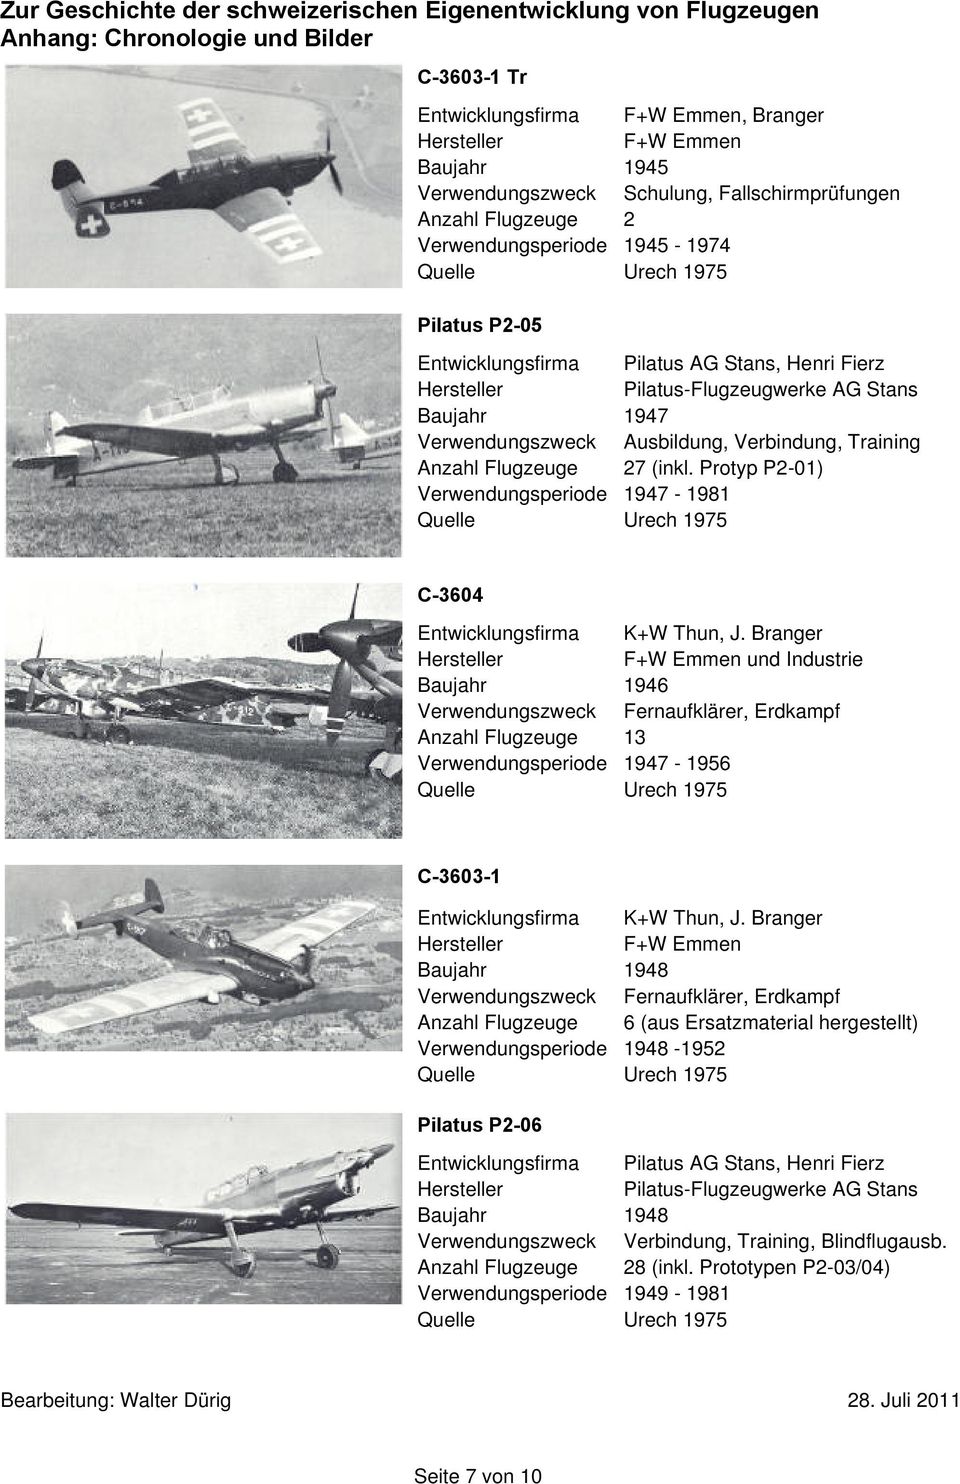 Ausbildung, Verbindung, Training Anzahl Flugzeuge 27 (inkl. Protyp P2-01) Verwendungsperiode 1947-1981 C-3604 Entwicklungsfirma, J.